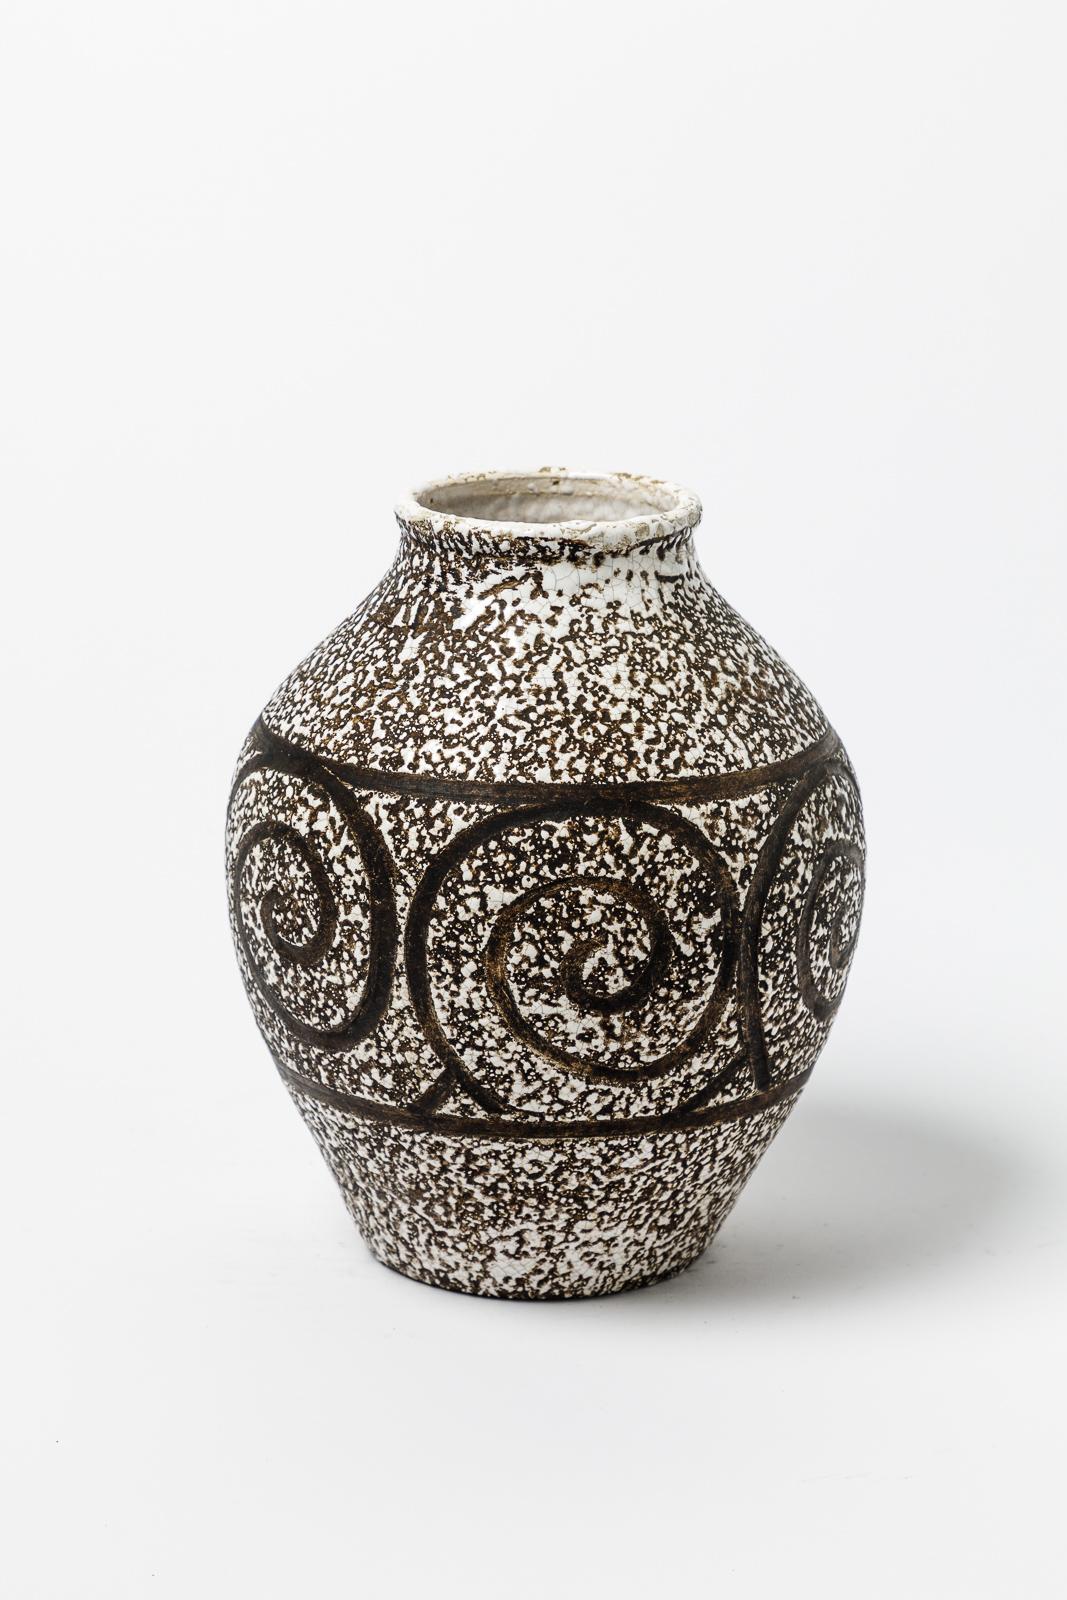 Dans le style de Jean Besnard.

Vase original art déco en céramique blanche et noire.

Condition ogirale parfaite.

Réalisé vers 1930.

Mesures : hauteur 23 cm
Grand 18 cm.